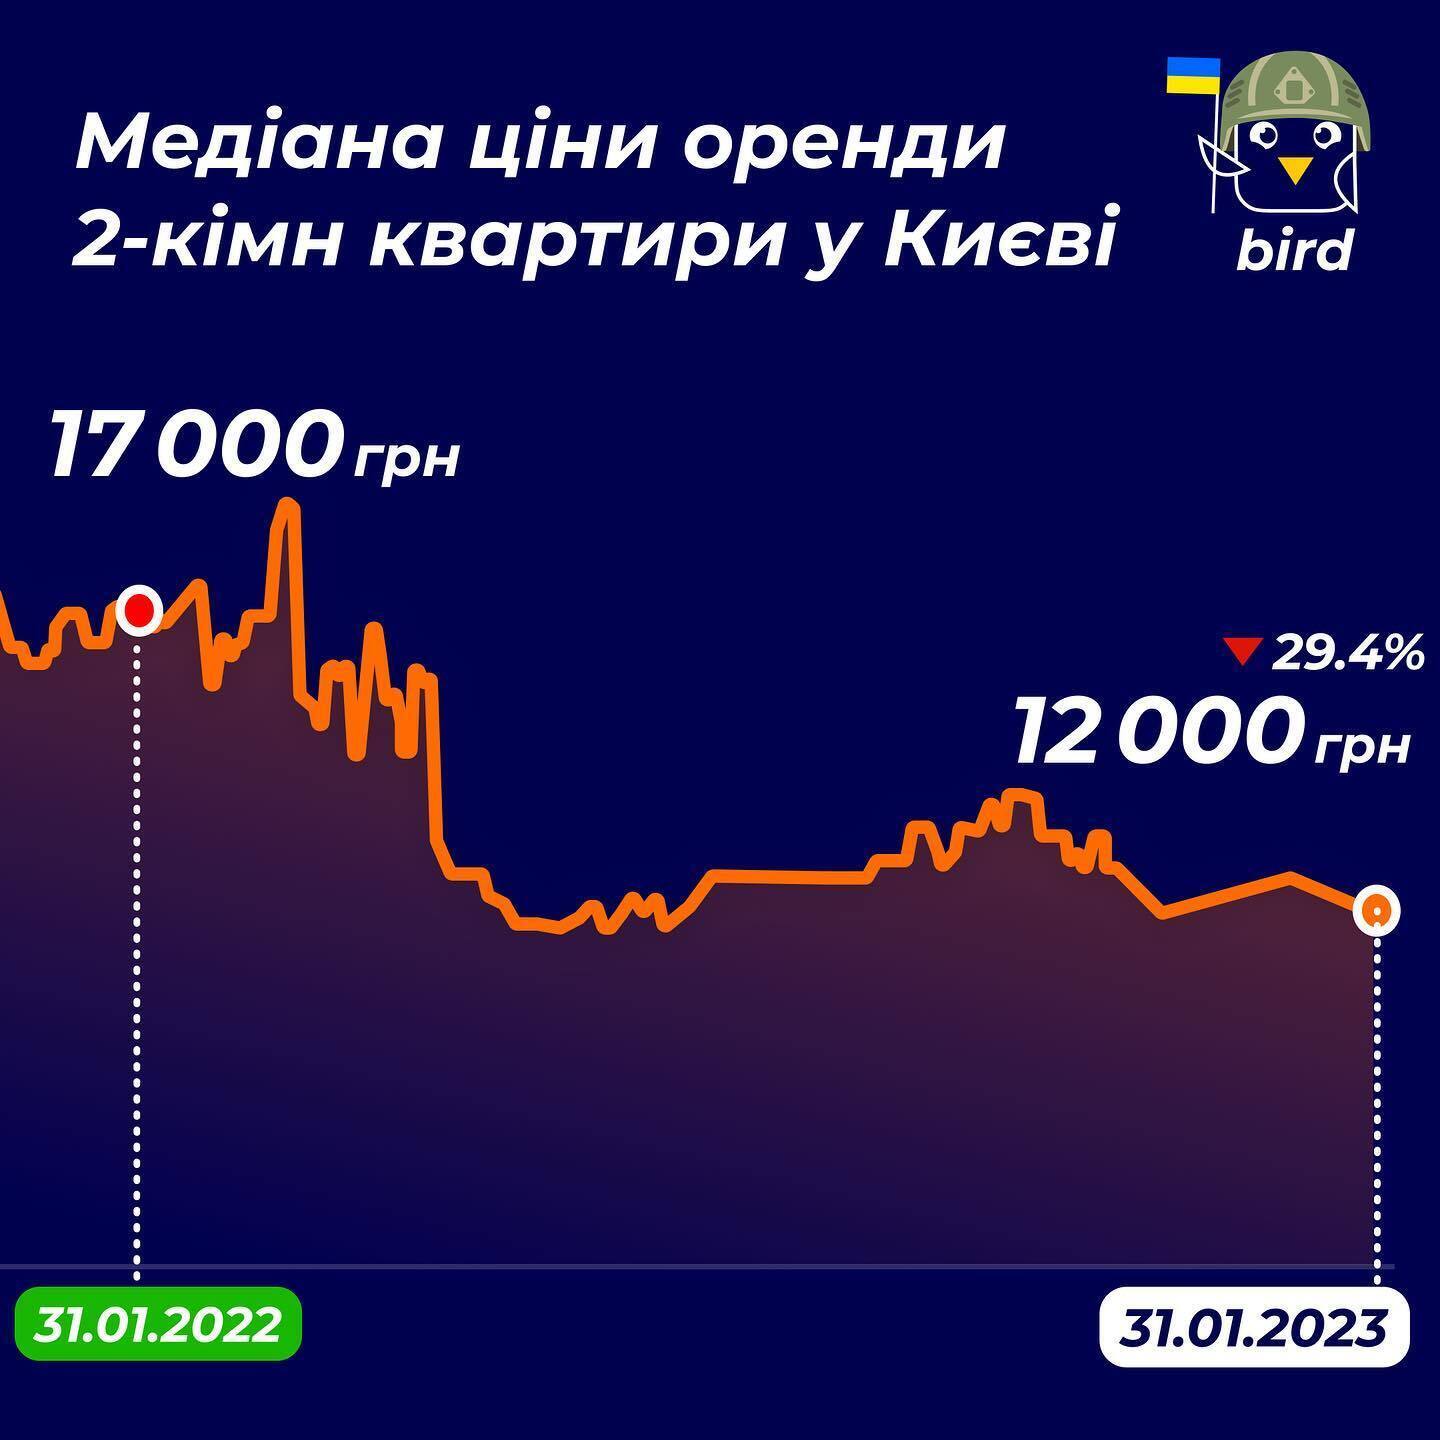 2-кімнатні квартири у Львові здають у середньому по 16 000 грн, у Києві ж на 4 000 грн дешевше